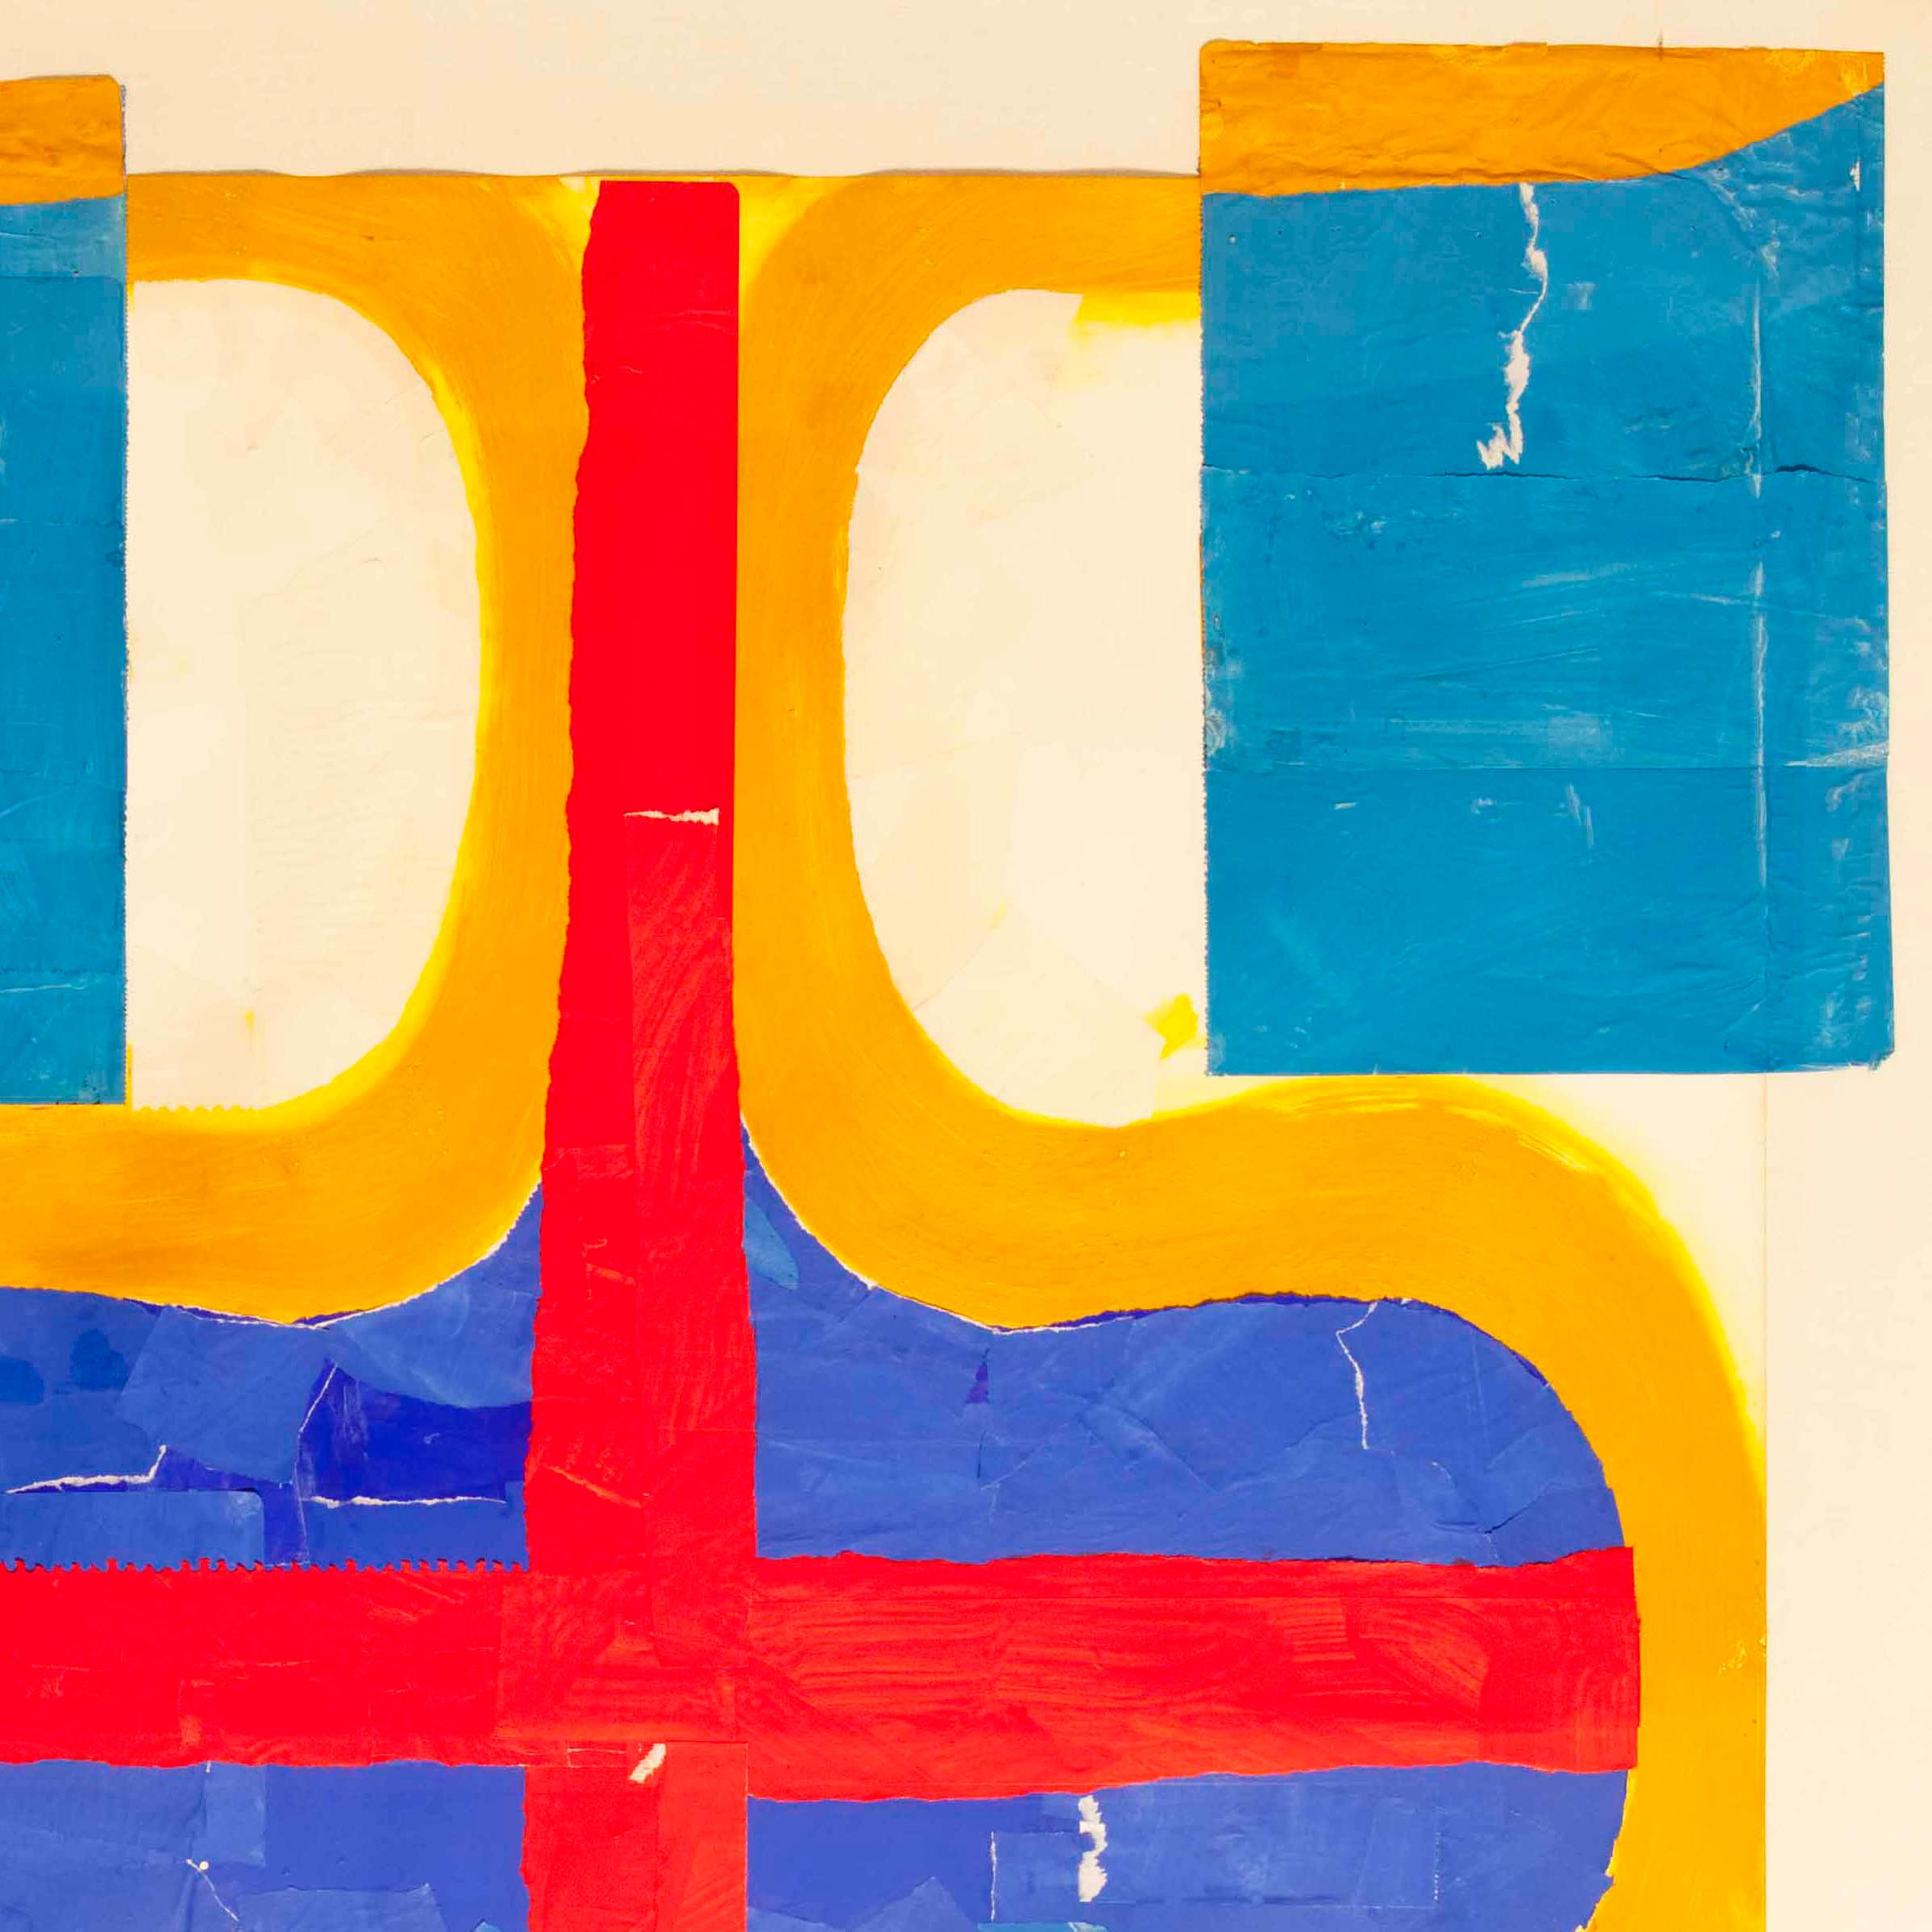 Fritz Bultman unterschied sich von anderen abstrakten Expressionisten durch seine akribisch organisierten abstrakten Kompositionen, die Verwendung von Skulpturen und die Einführung der Collage als zentrale Methode. Bultman, der vor allem für seine